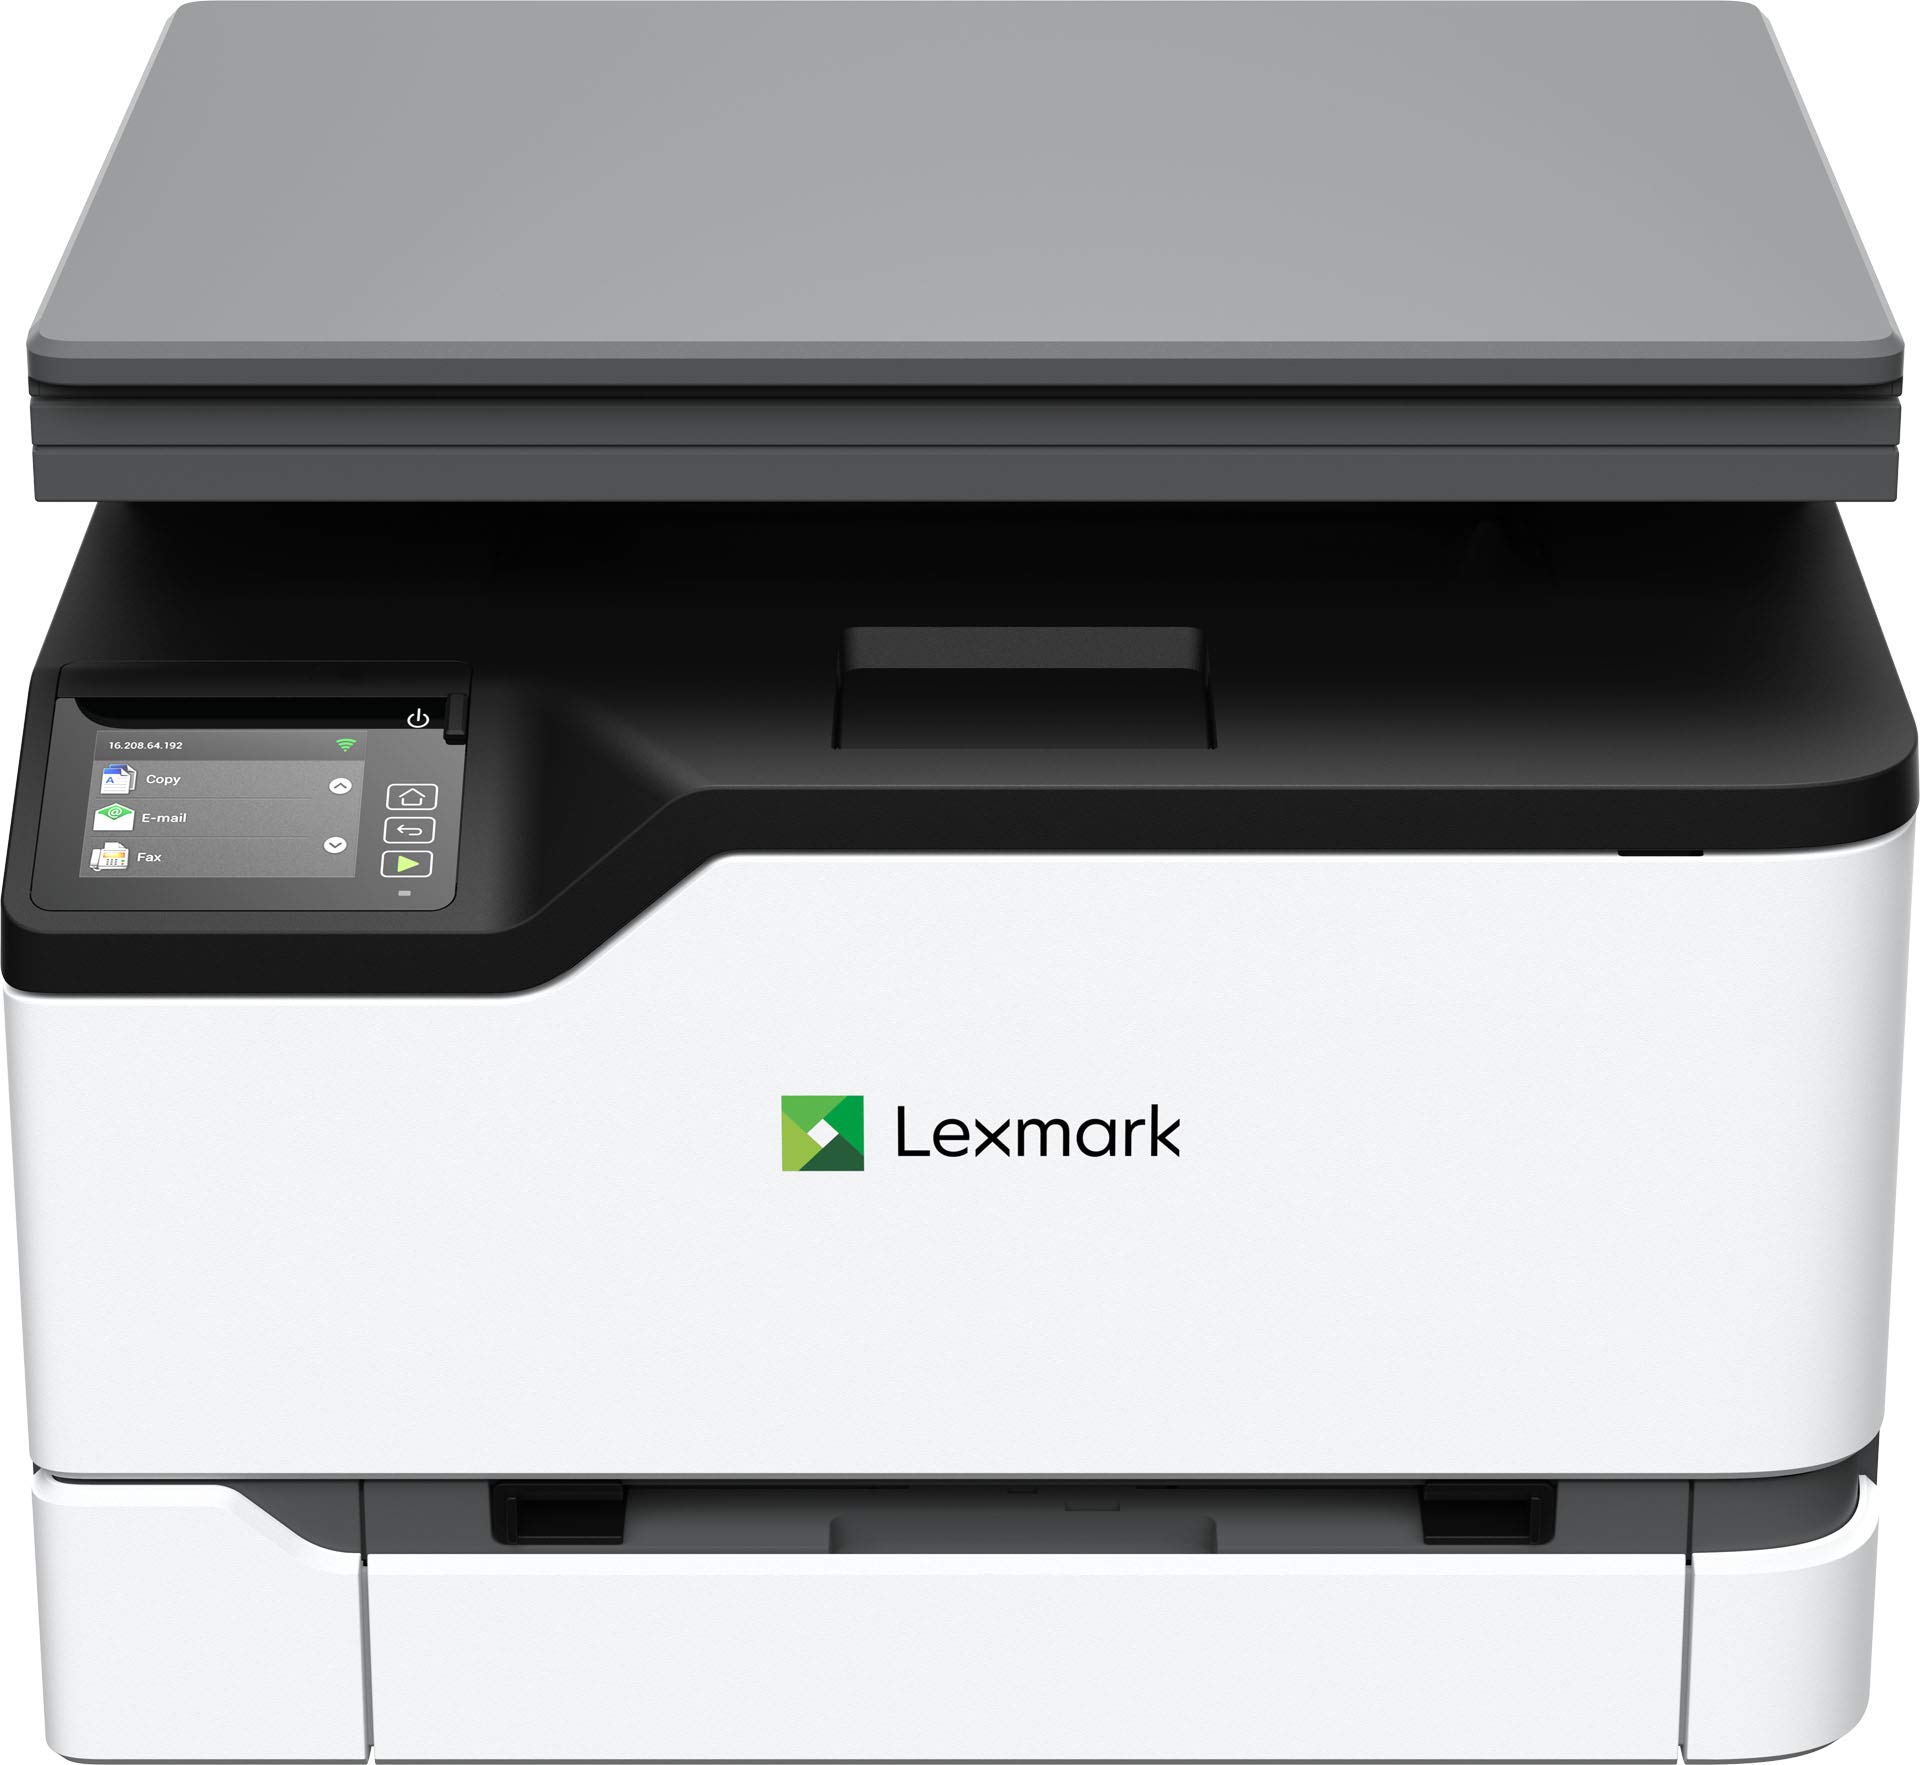 Lexmark MC3224dwe Color Multifunction Laser Printer wit...